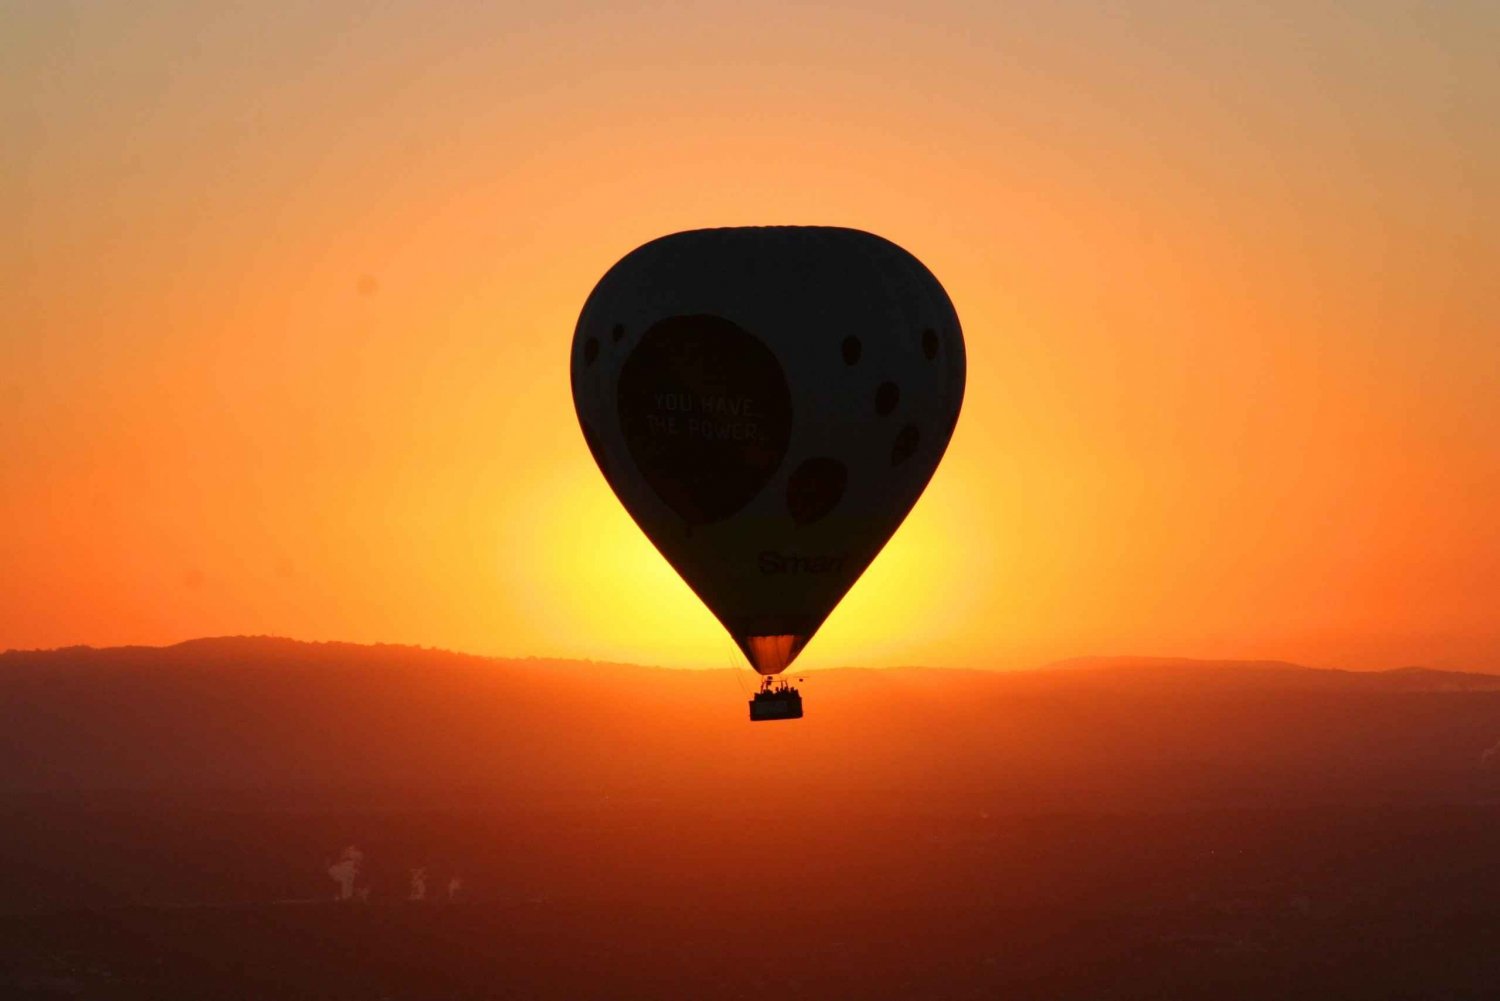 Geelong: Balloon Flight at Sunrise